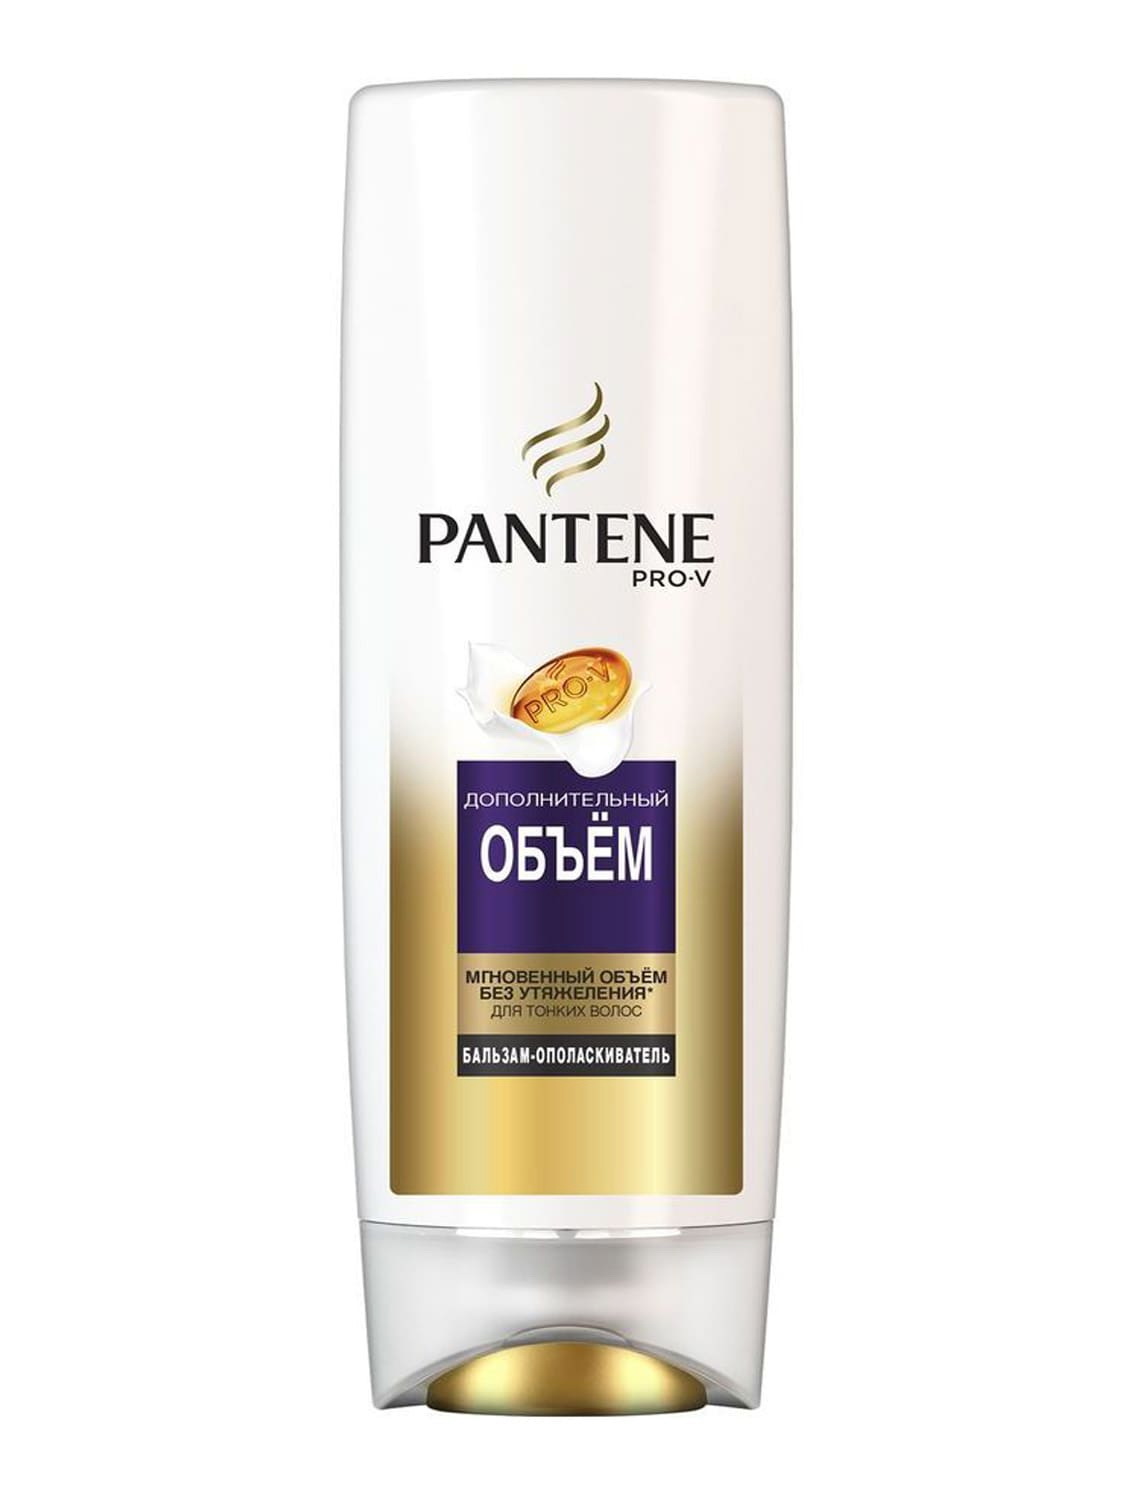 Pantene Pro-V бальзам-ополаскиватель 360мл дополнительный объем для тонких/ослабленных волос